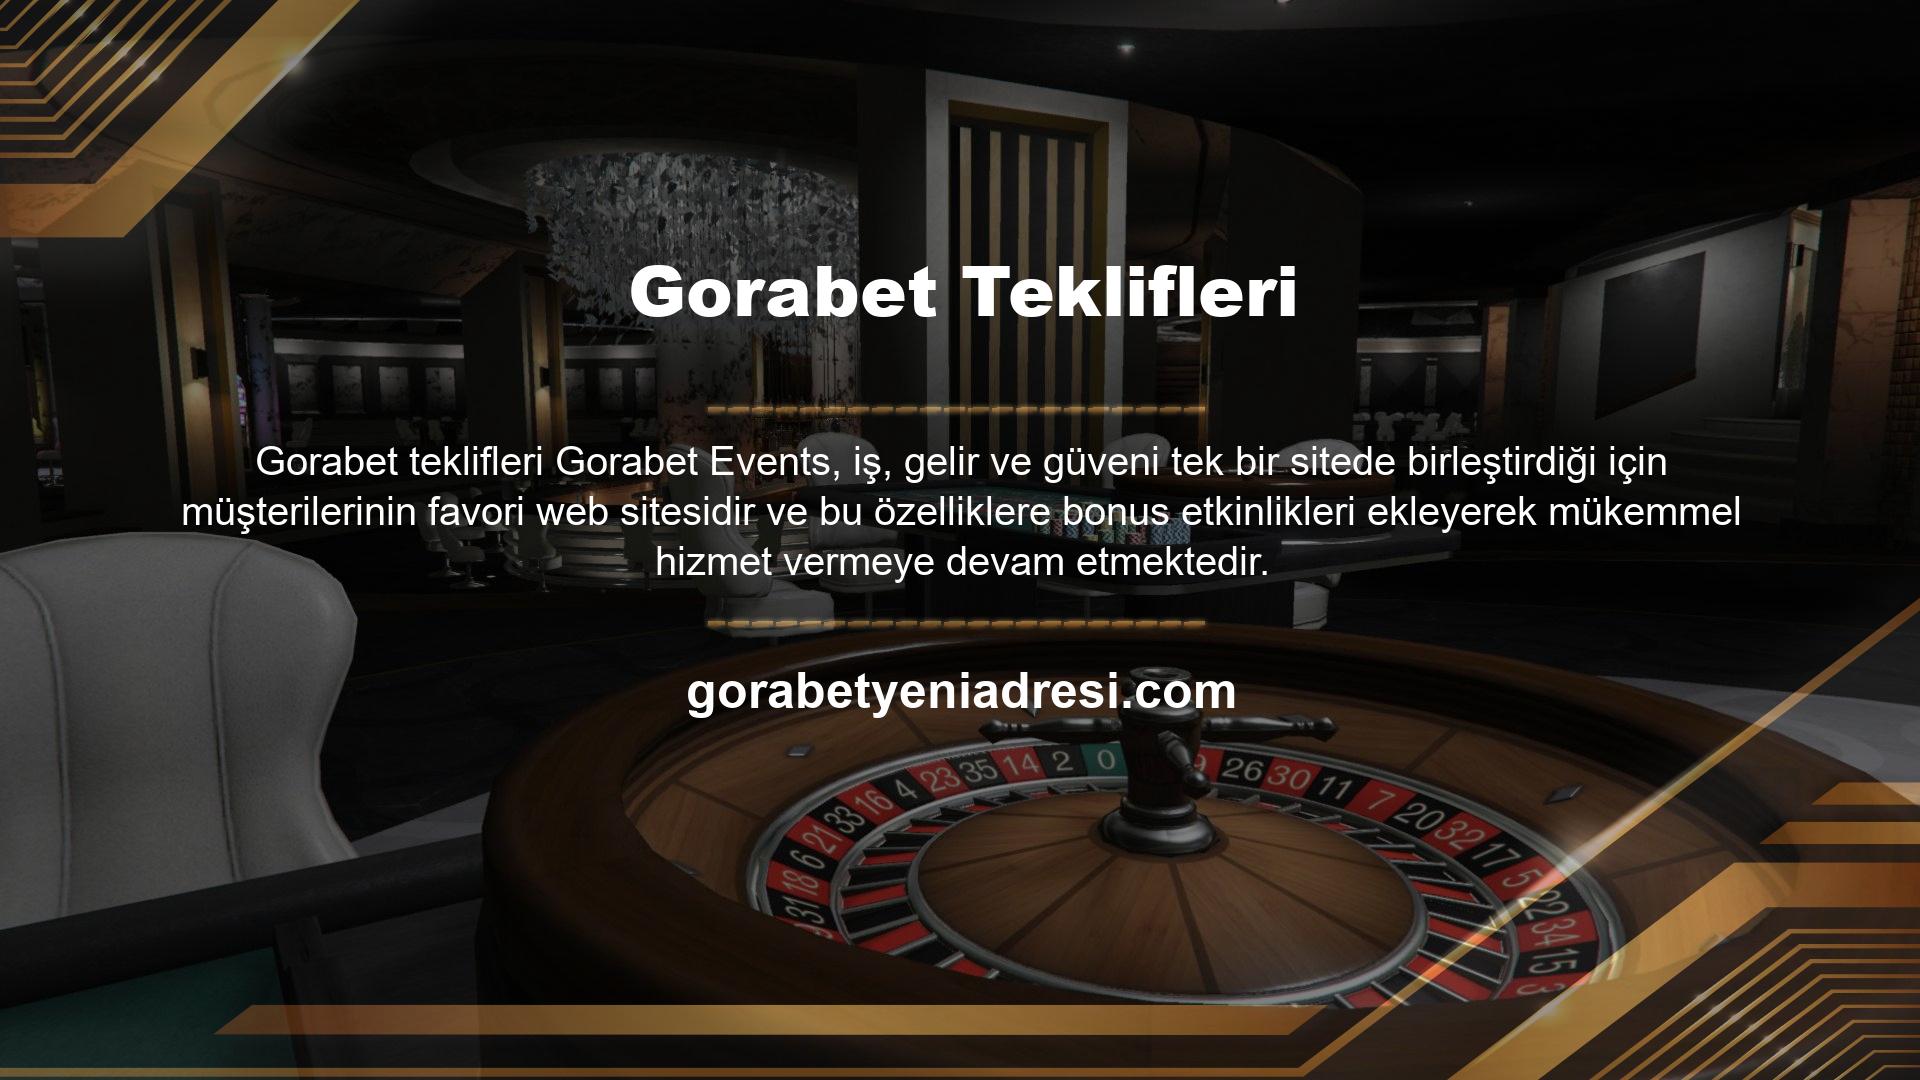 Gorabet liderliği, özellikle Türkiye pazarında faaliyet gösteren firmalar arasındaki kıyasıya rekabette en çok kullanılan araç olan ikramiye konusunda takdir topladı